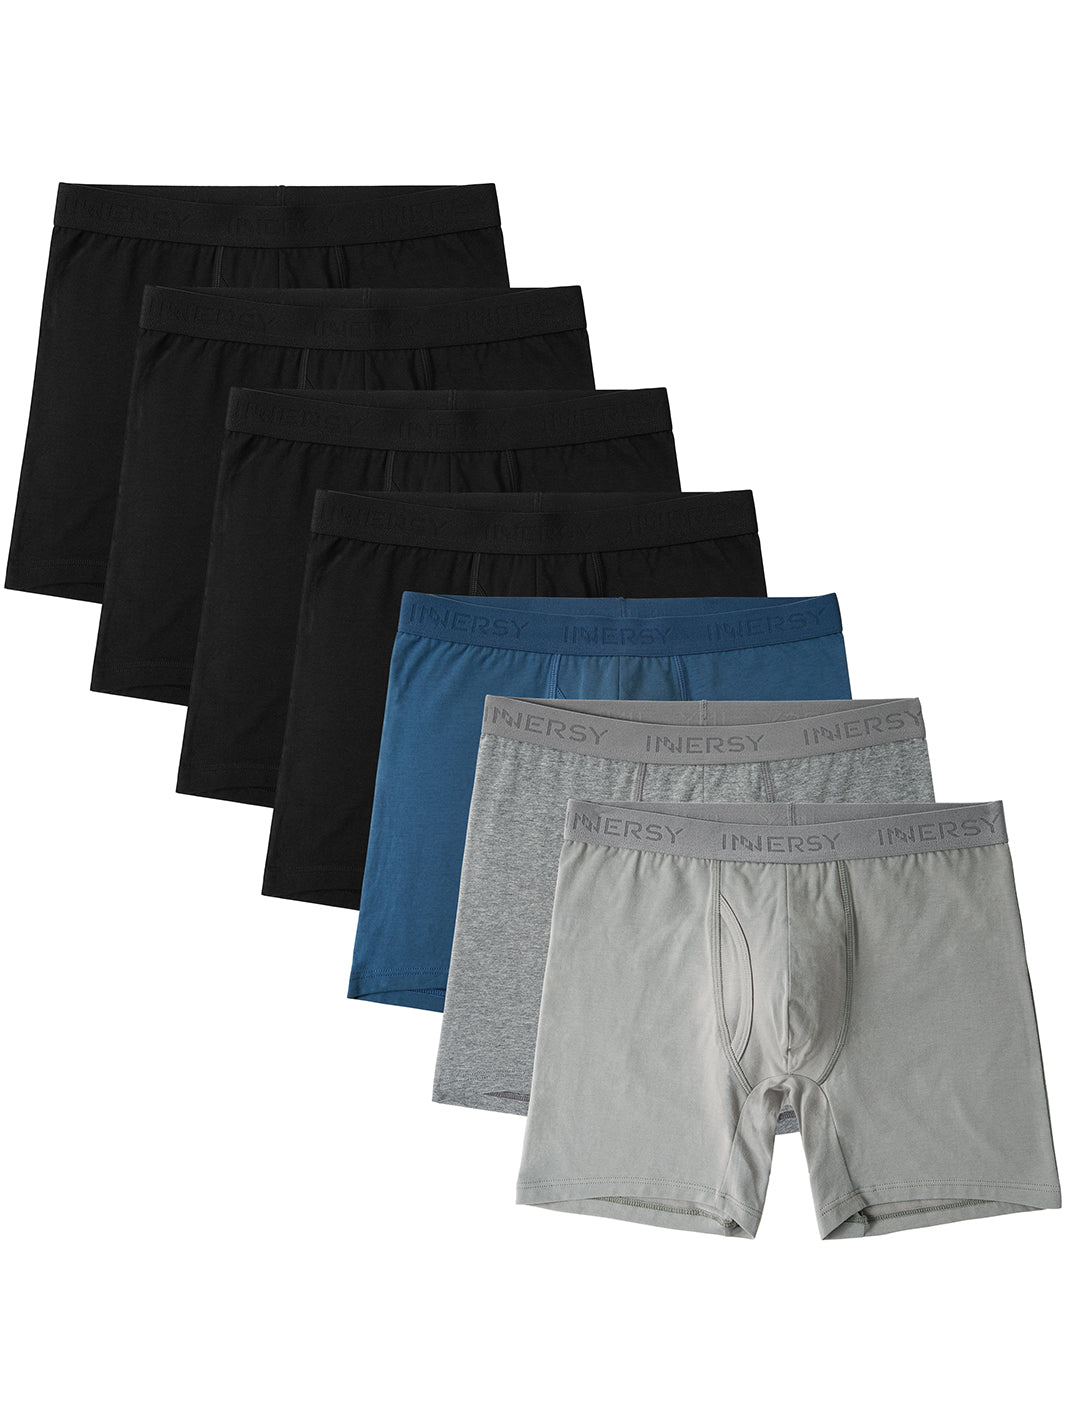 Comprar PUMIEY Mens Underwear 6 Pack Boxer Briefs Soft Cotton One